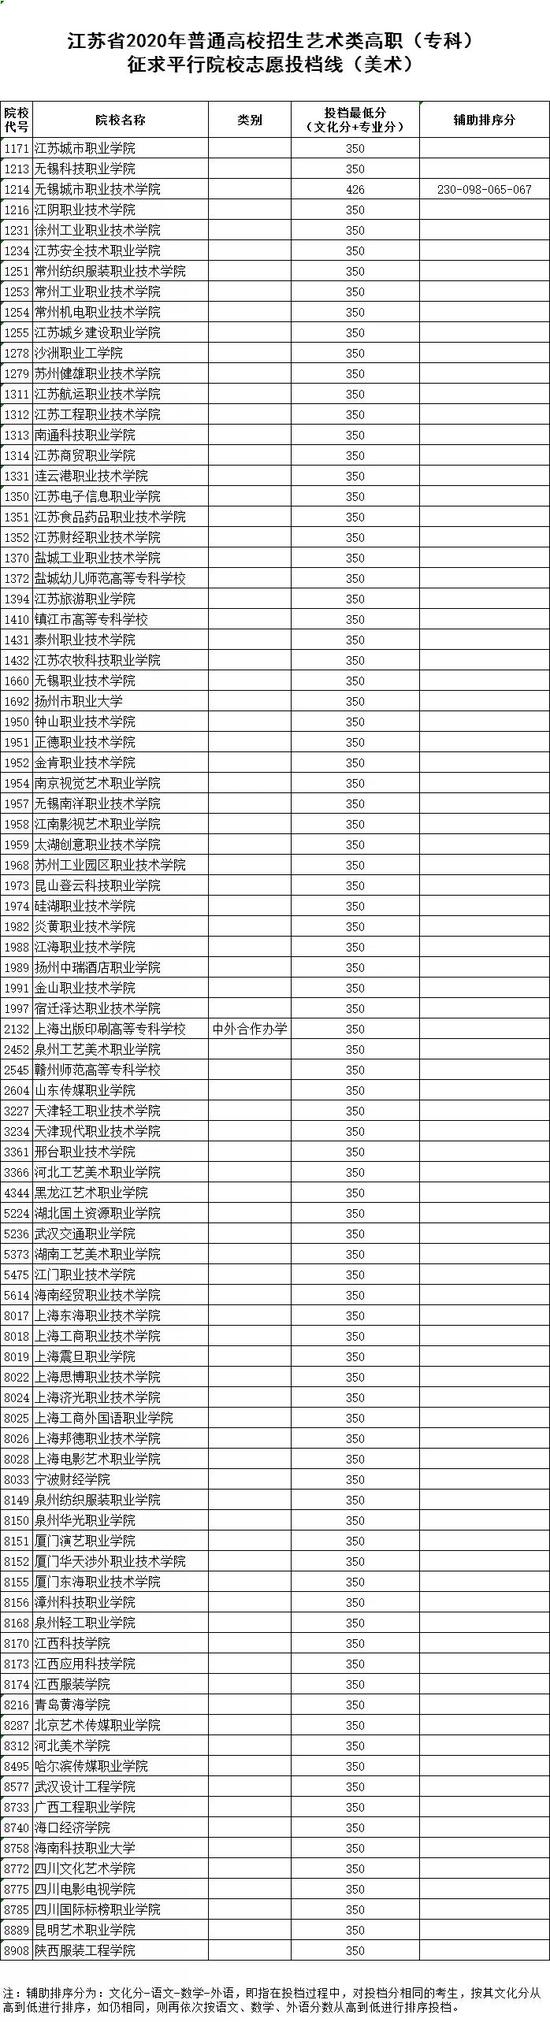 2020江苏体艺类高职(专科)征求平行院校志愿投档线